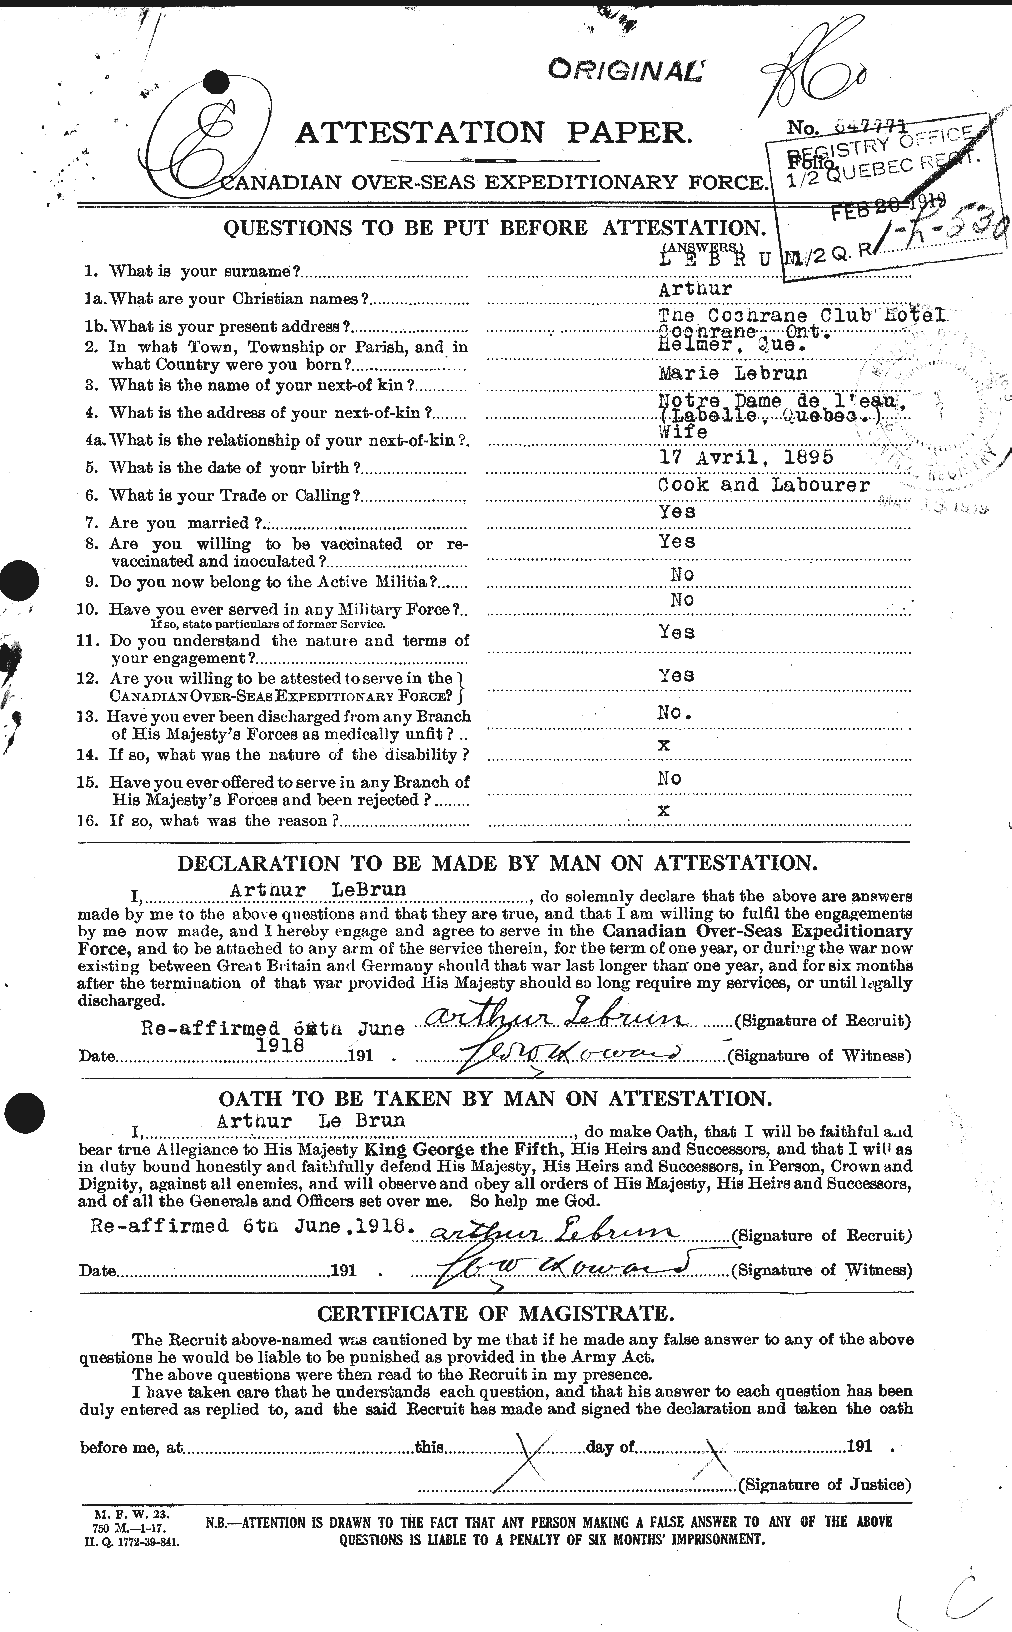 Dossiers du Personnel de la Première Guerre mondiale - CEC 461550a